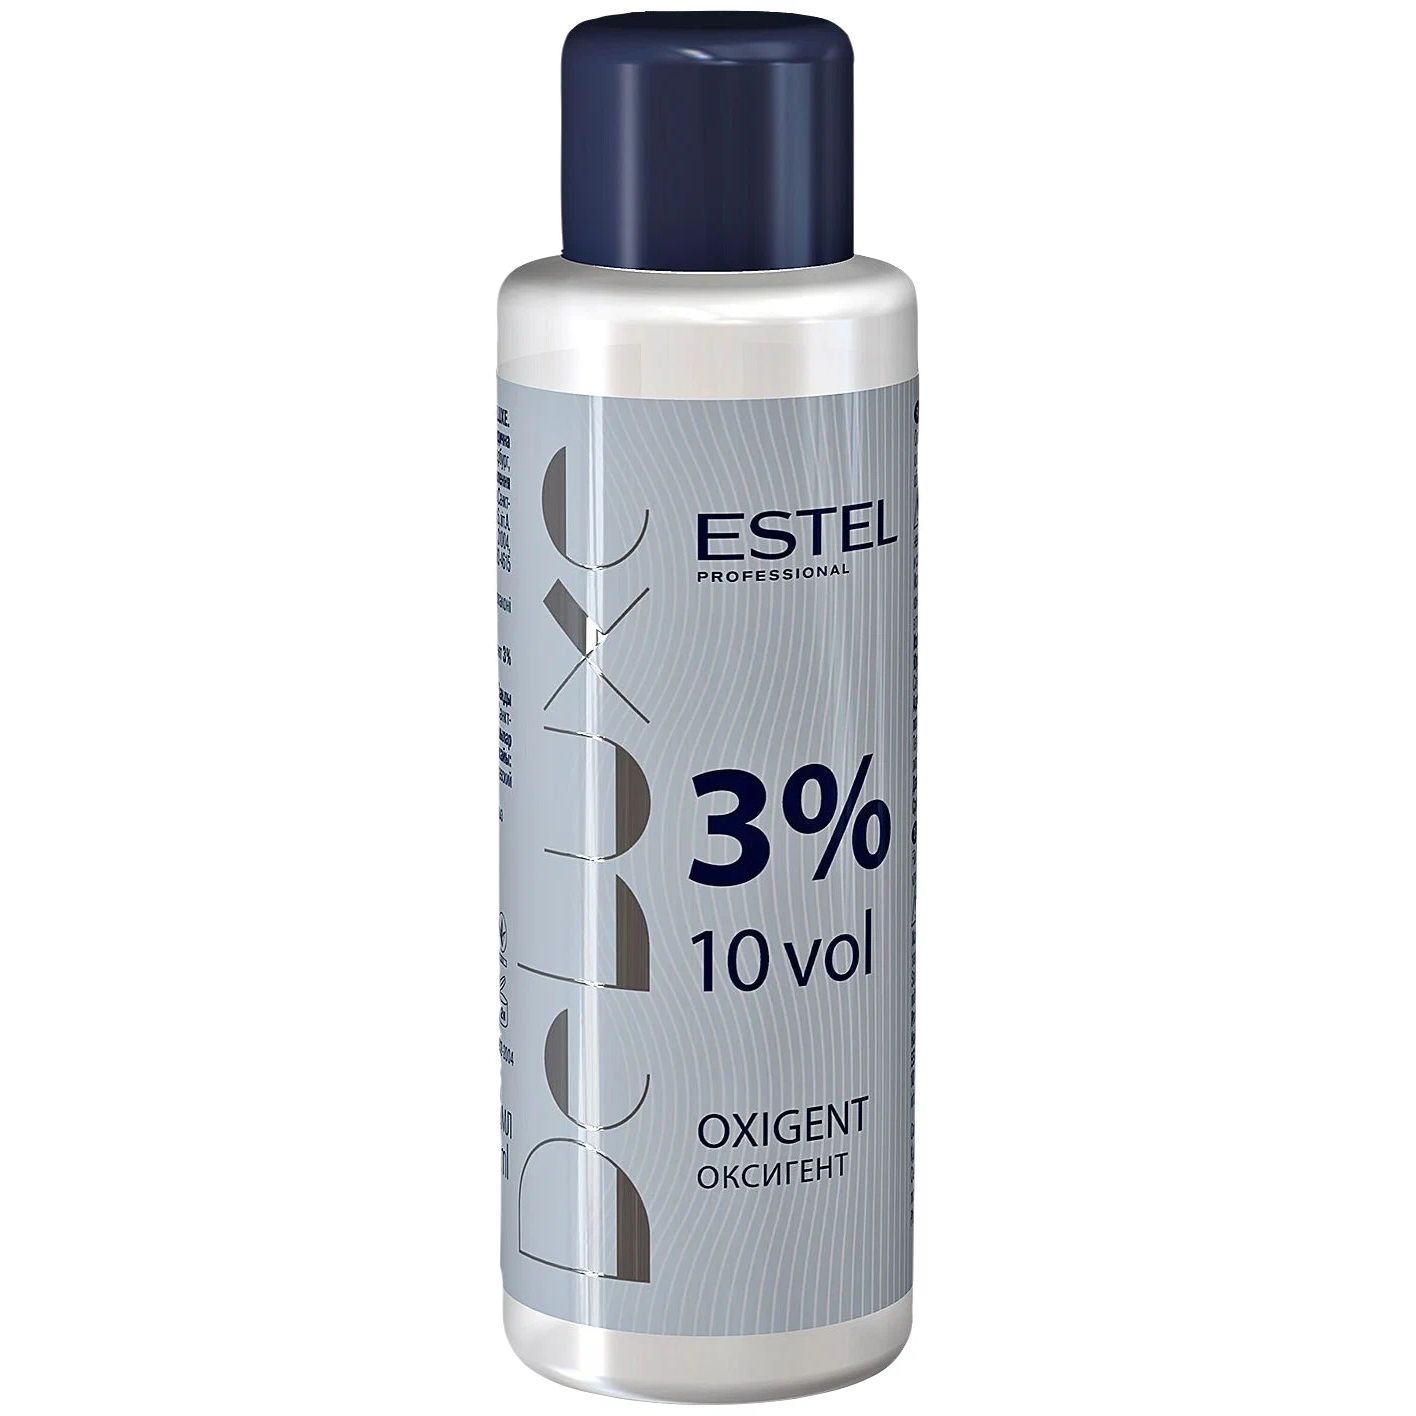 Проявитель Estel Professional De Luxe Oxigent 3% 60 мл проявитель estel professional de luxe oxigent 6% 900 мл